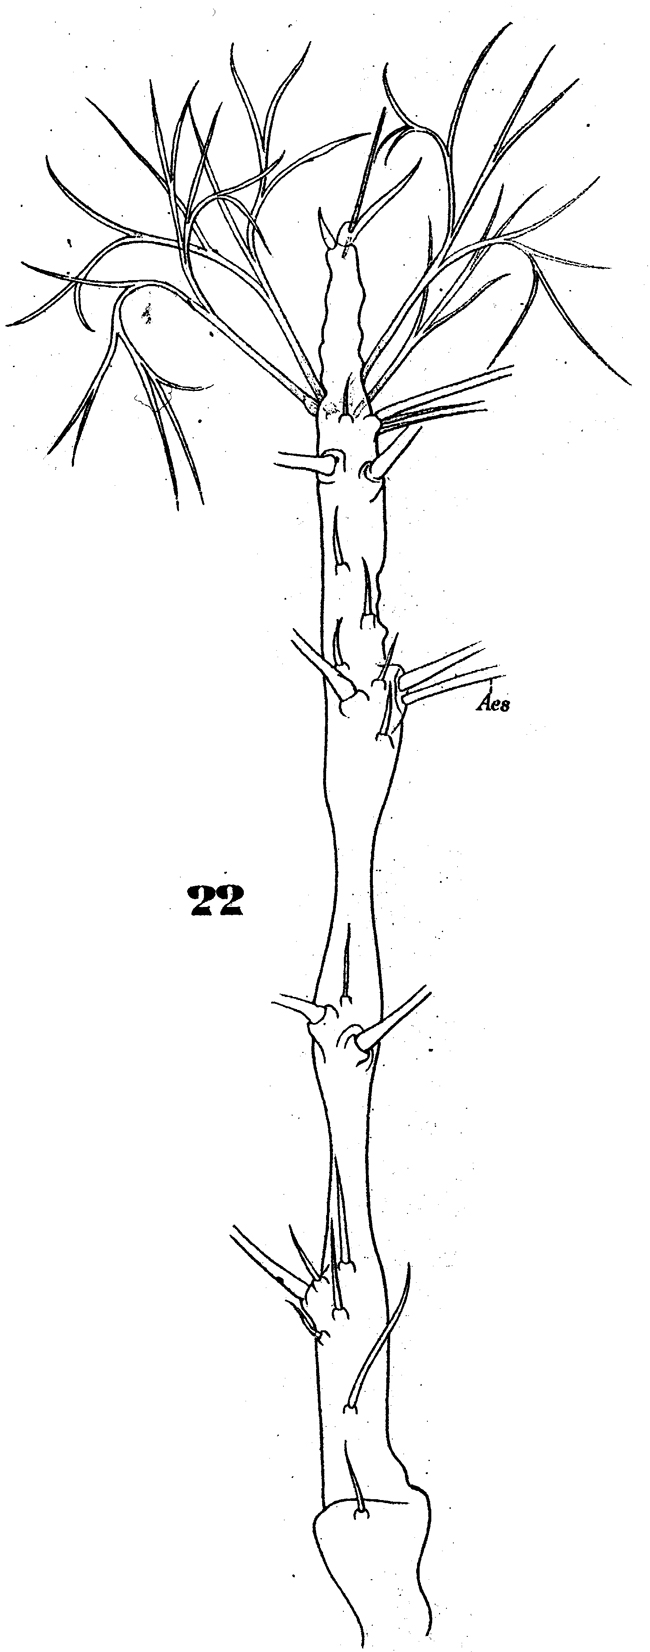 Espce Monstrilla longiremis - Planche 5 de figures morphologiques